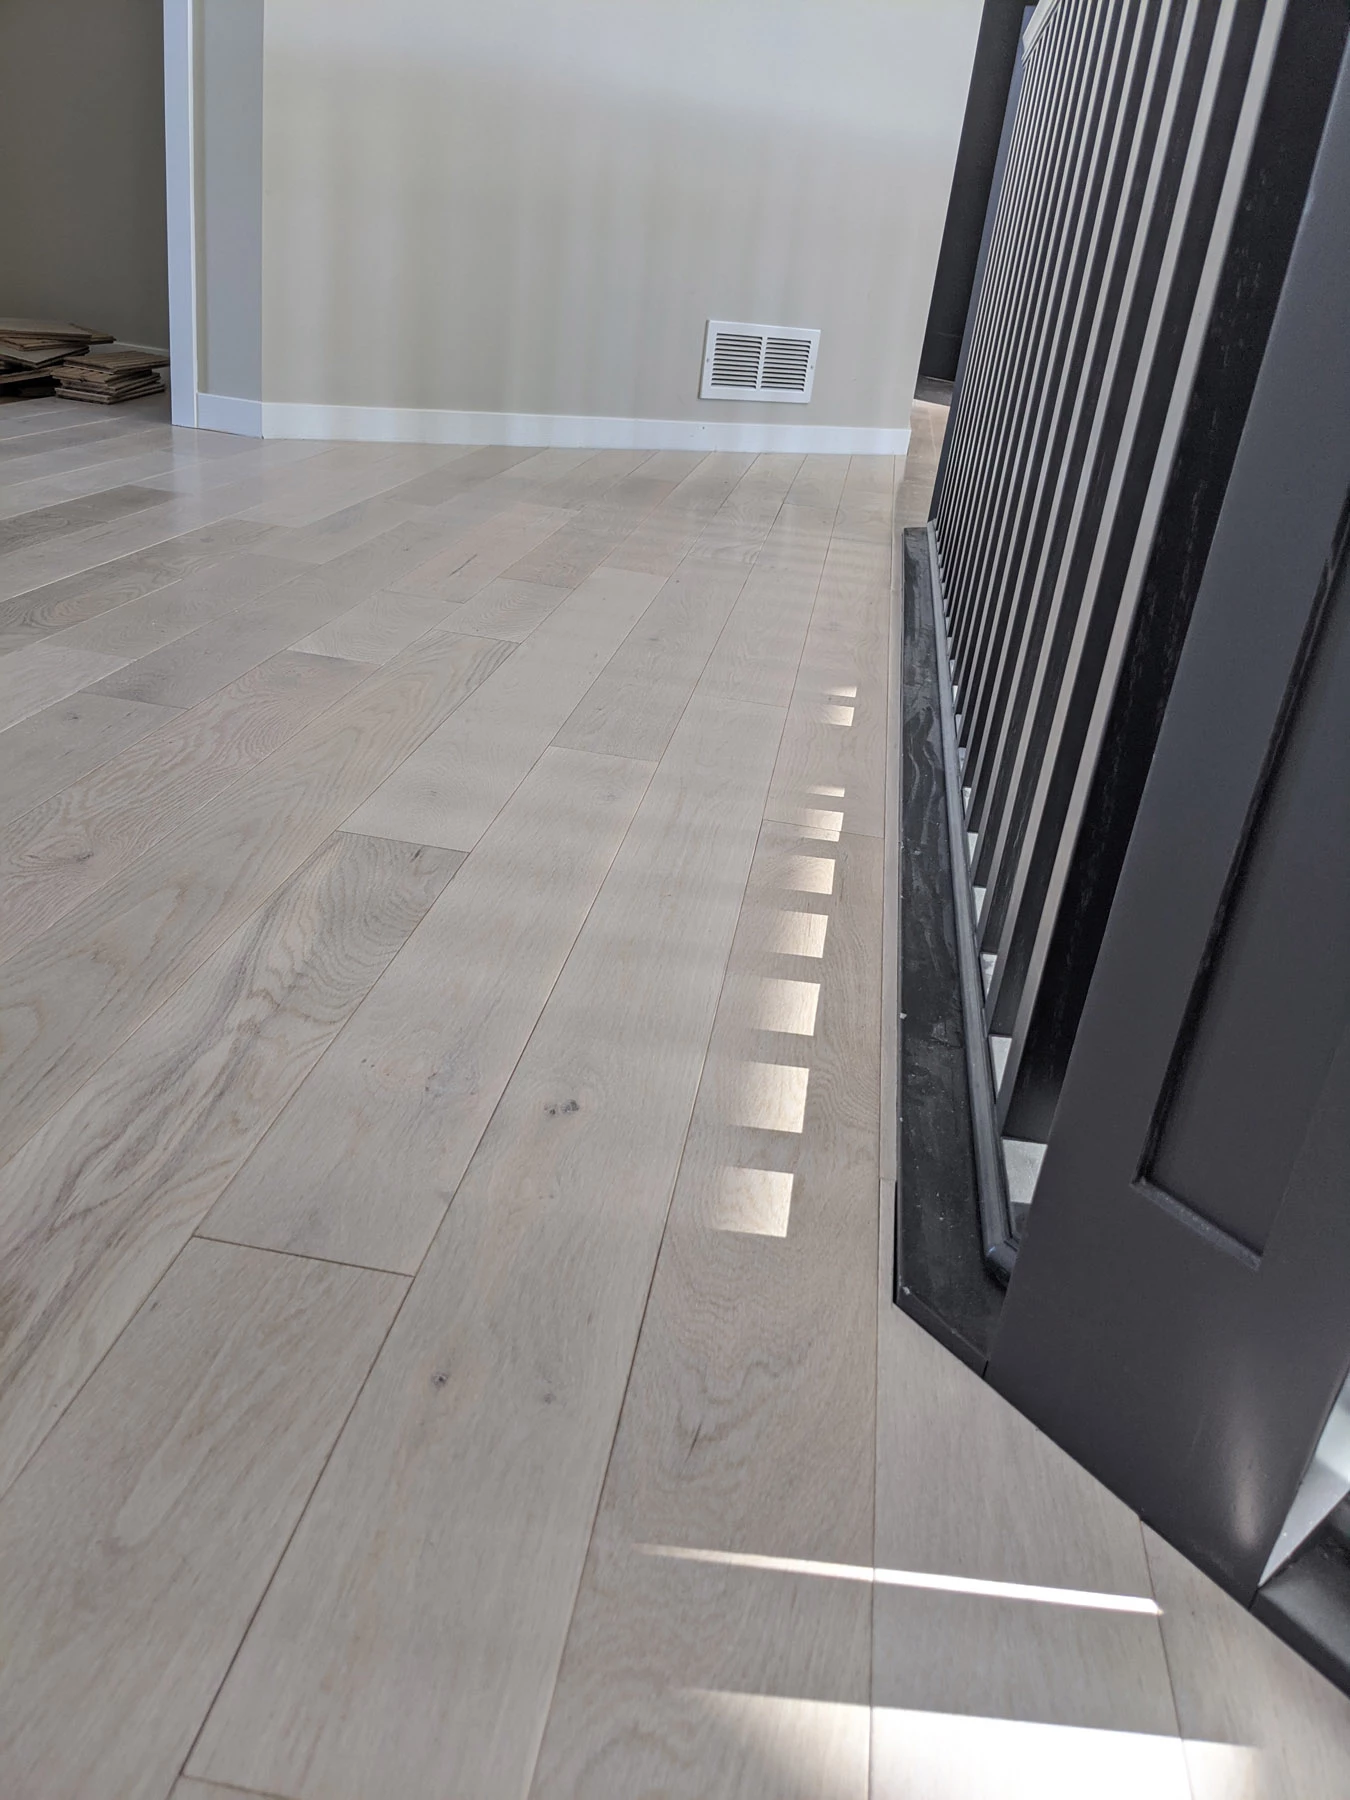 White Oak flooring (1750 sq. ft of it)